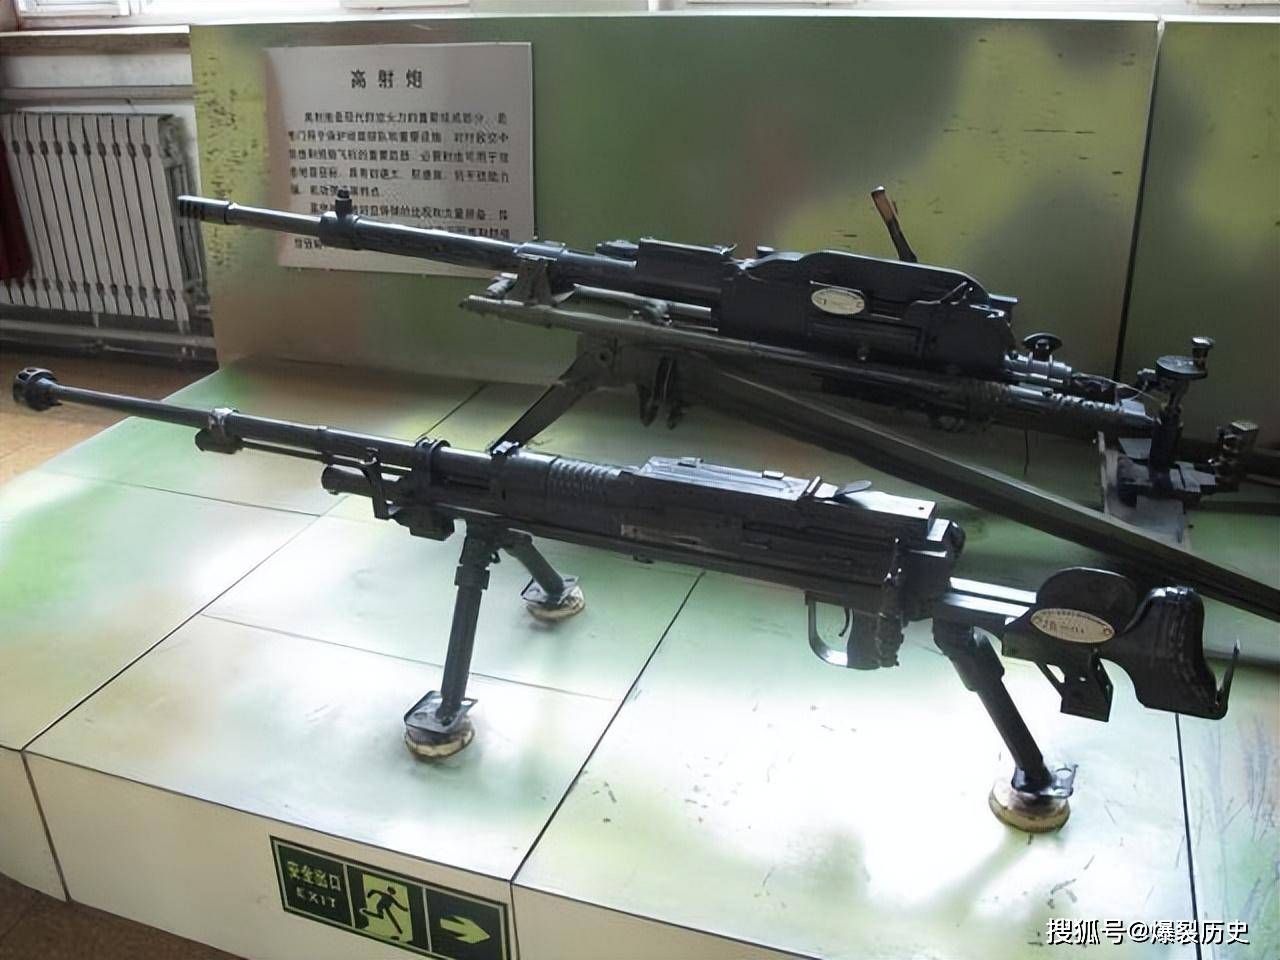 抗战日军武器:反坦克步枪篇,鲜为人知的秘密武器